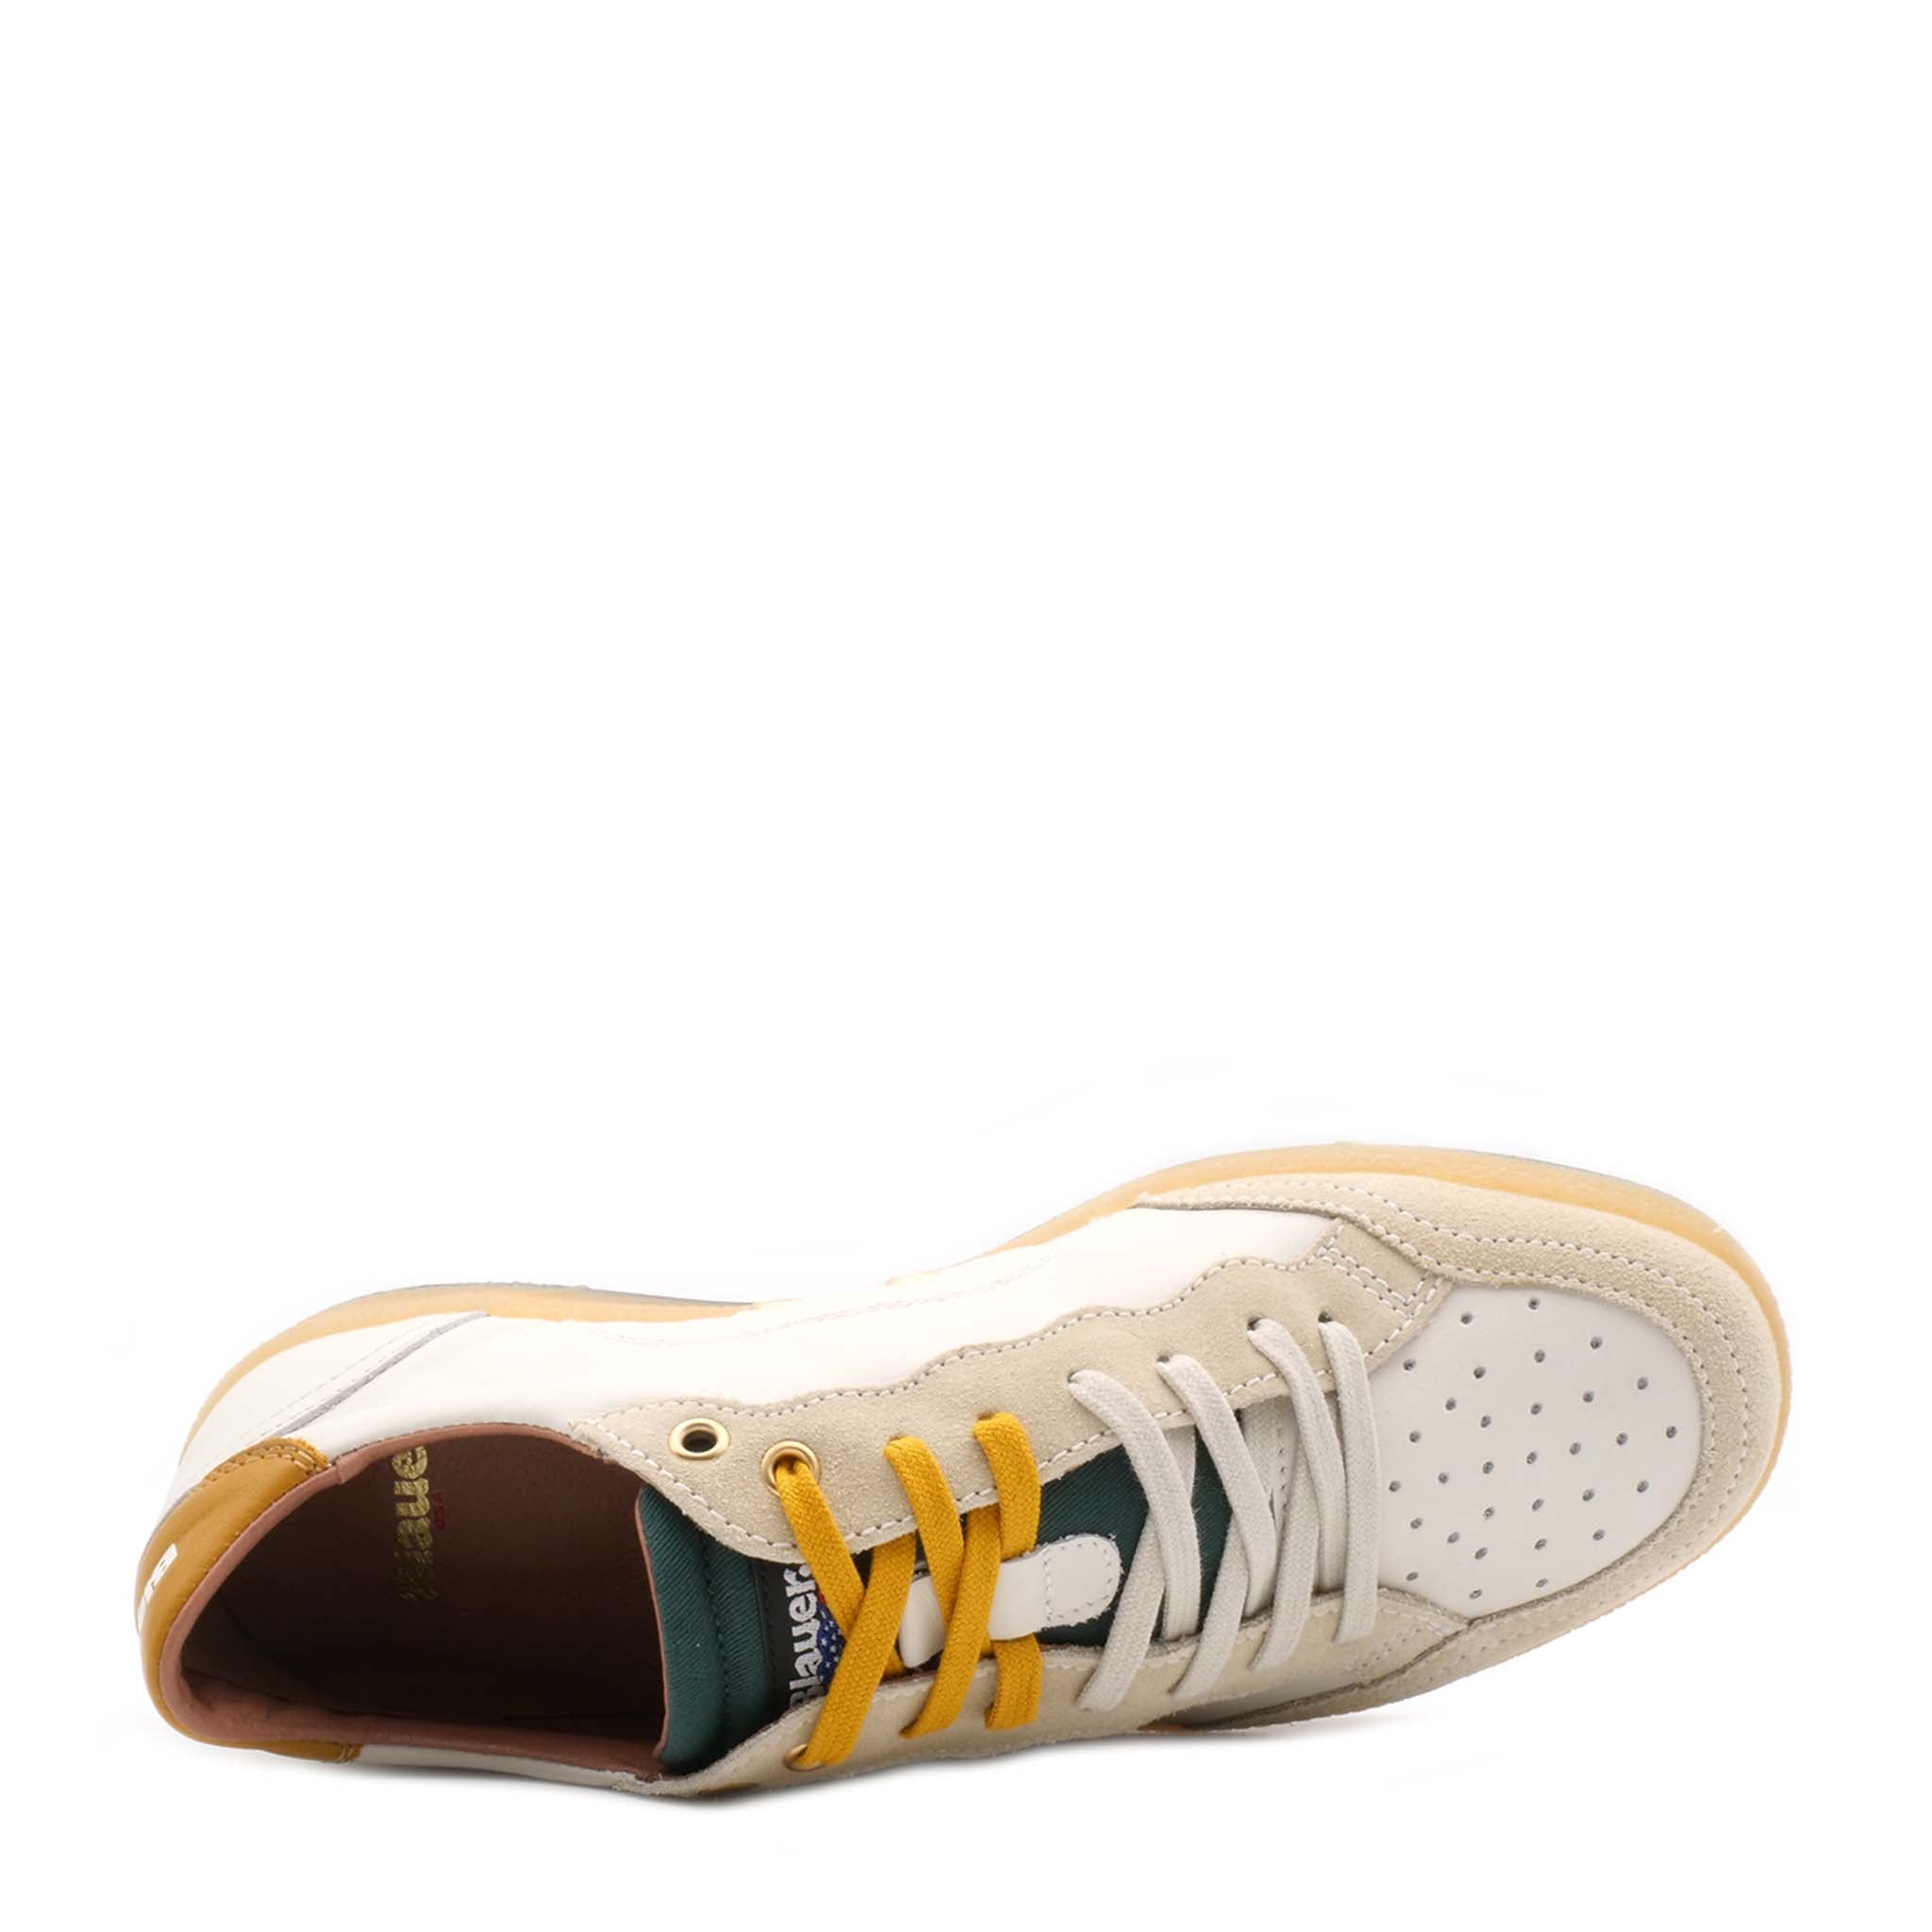 Sneaker BLAUER MURRAY01 White/Green/Yellow